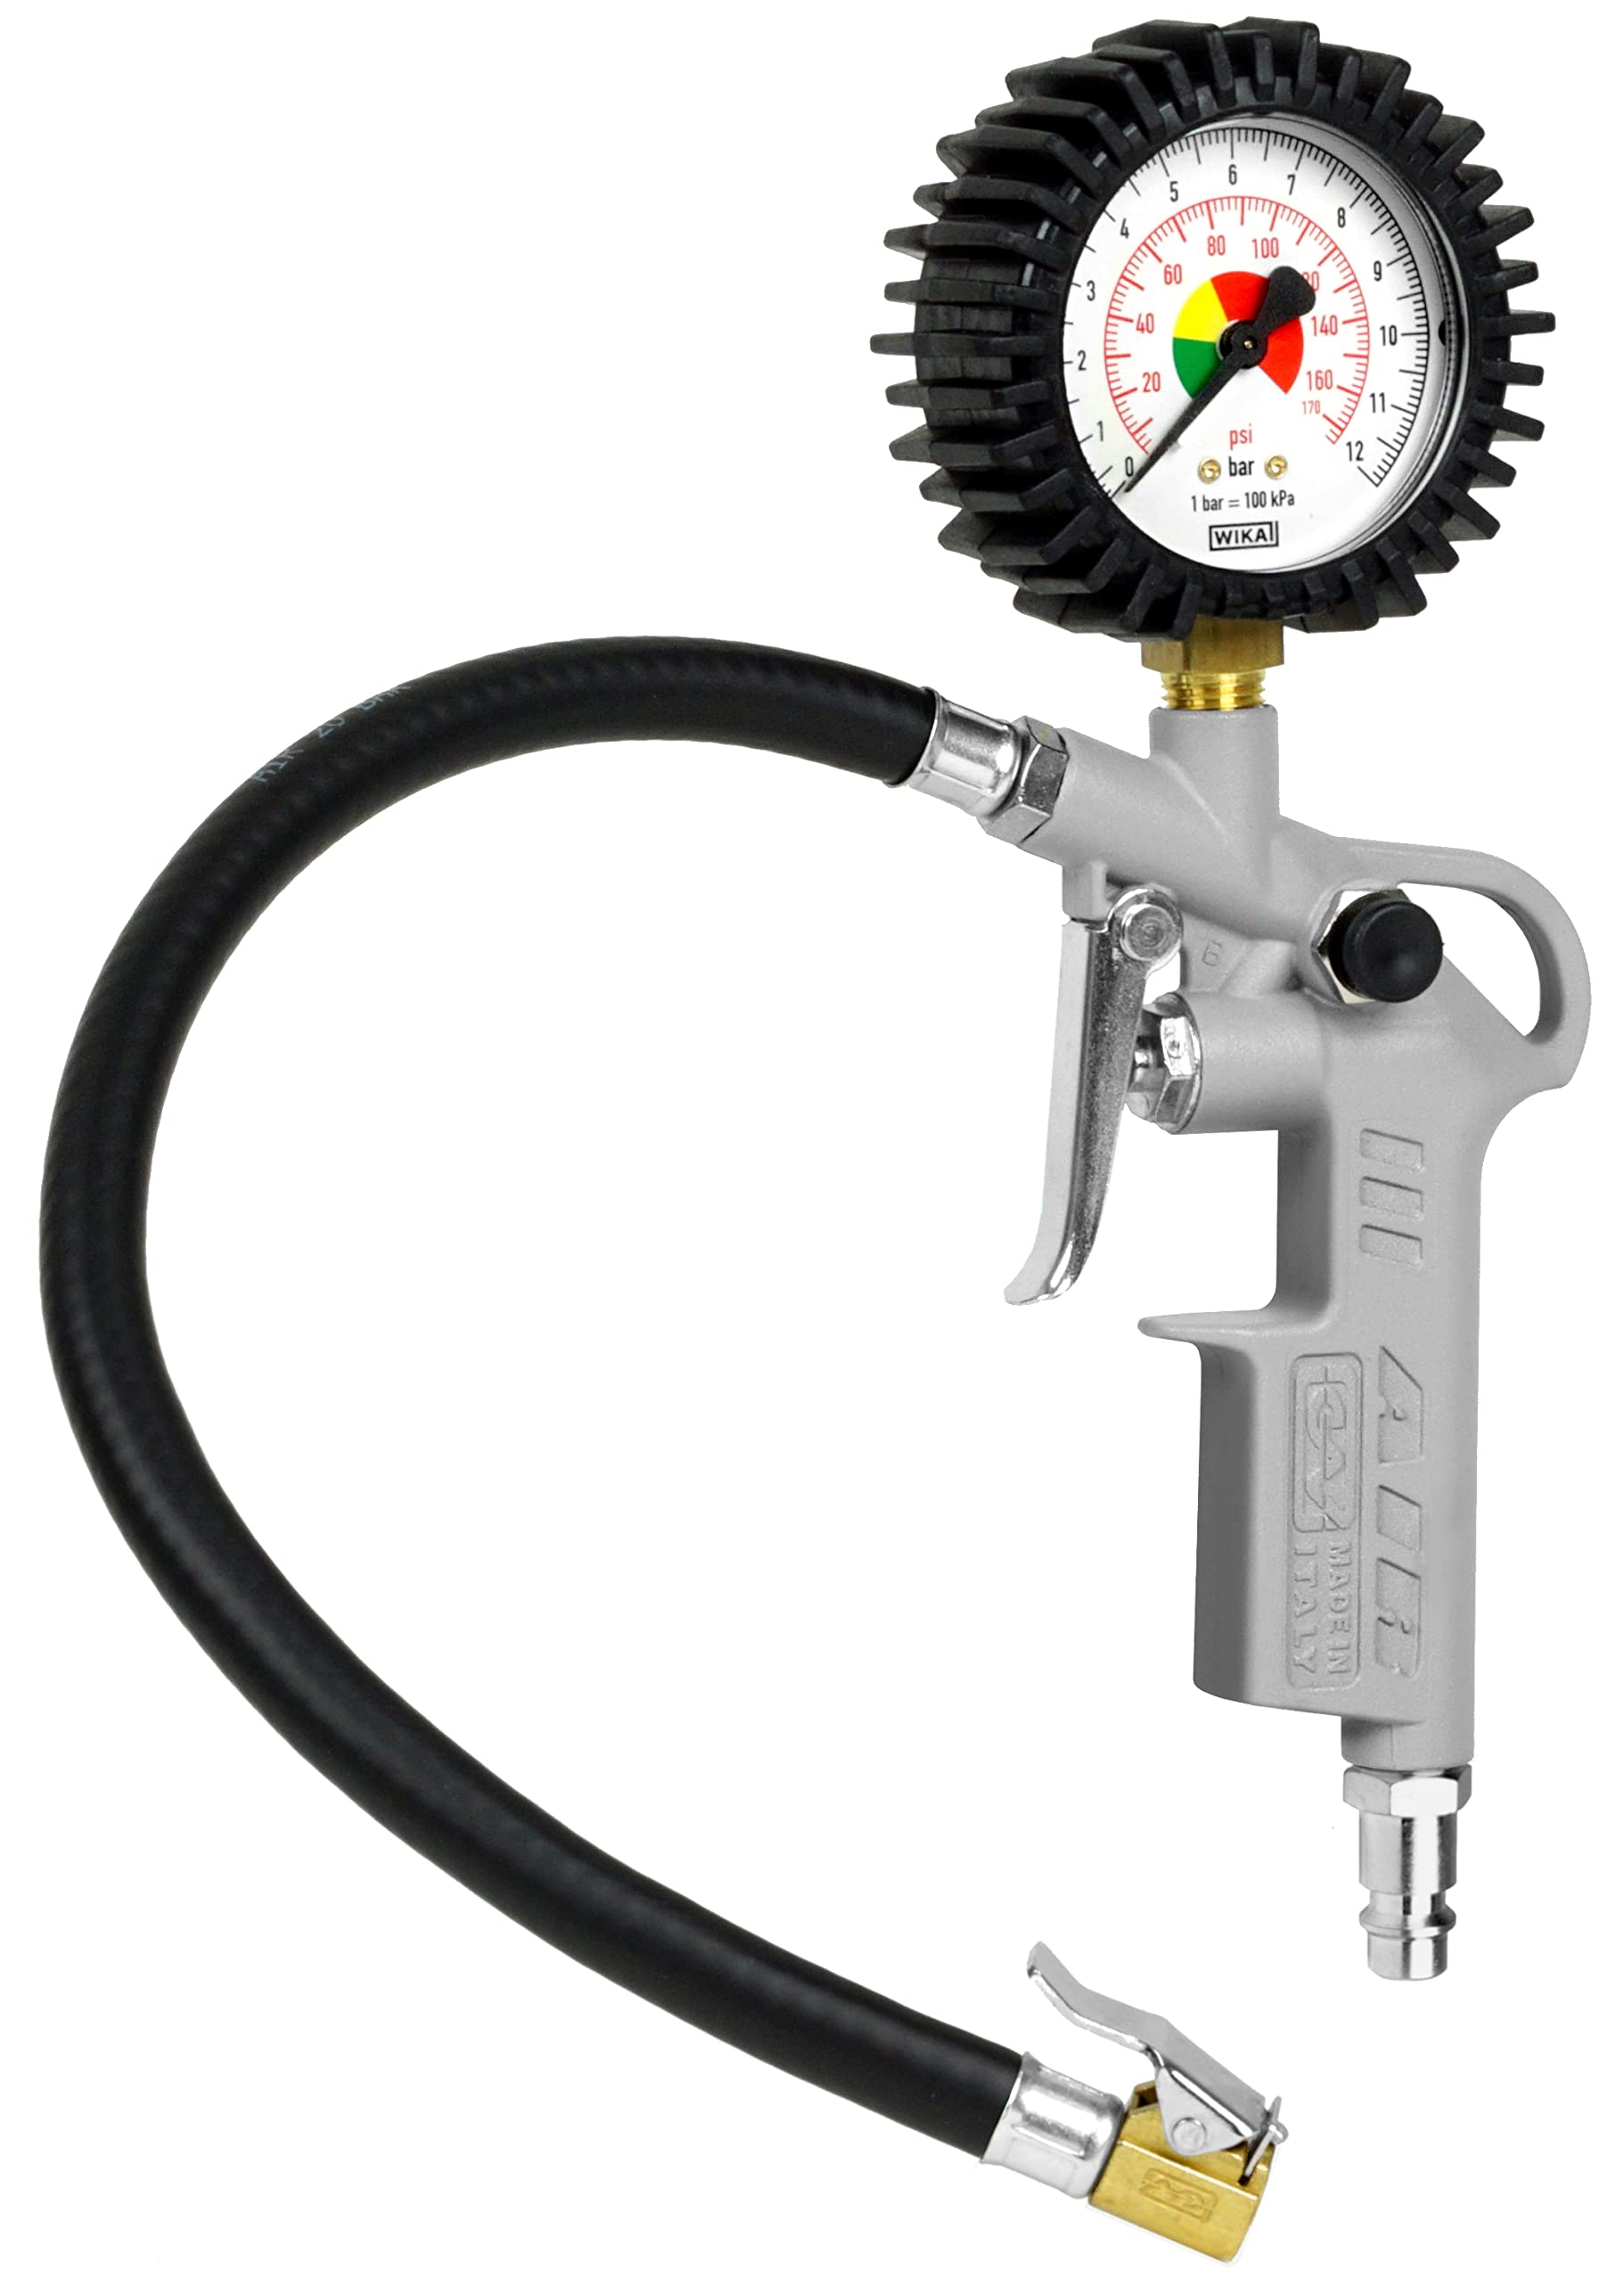 GAV Reifenfüller Messgerät mit WIKA 63mm Manometer - Reifenfüllpistole aus Aluminium - Profi Reifendruckprüfer Druckluft für Auto, Motorrad, Lkw - 60D - Standard von GAV